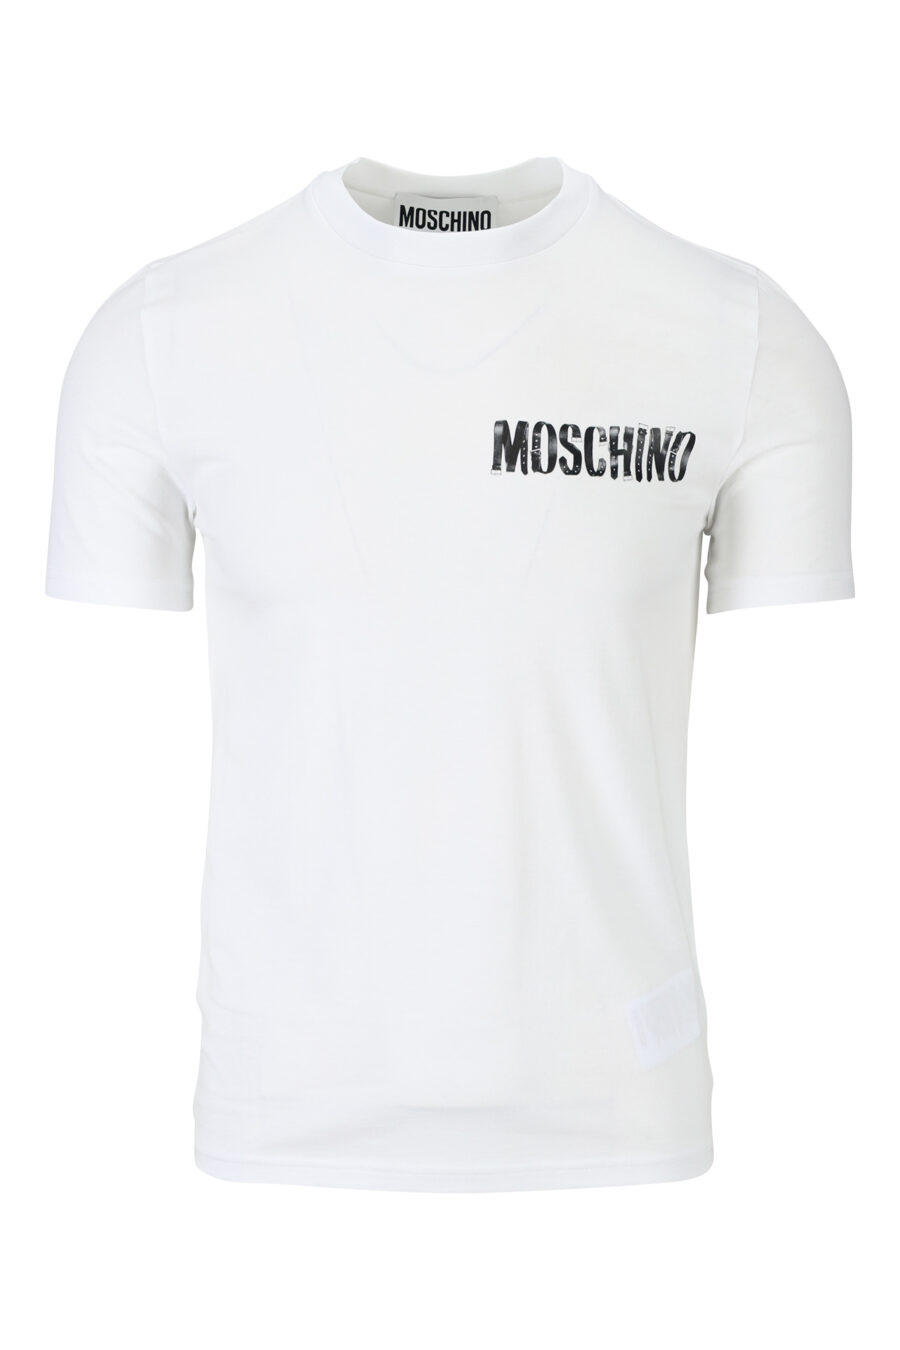 Weißes T-Shirt mit schwarzem getragenen Minilogo - 889316938791